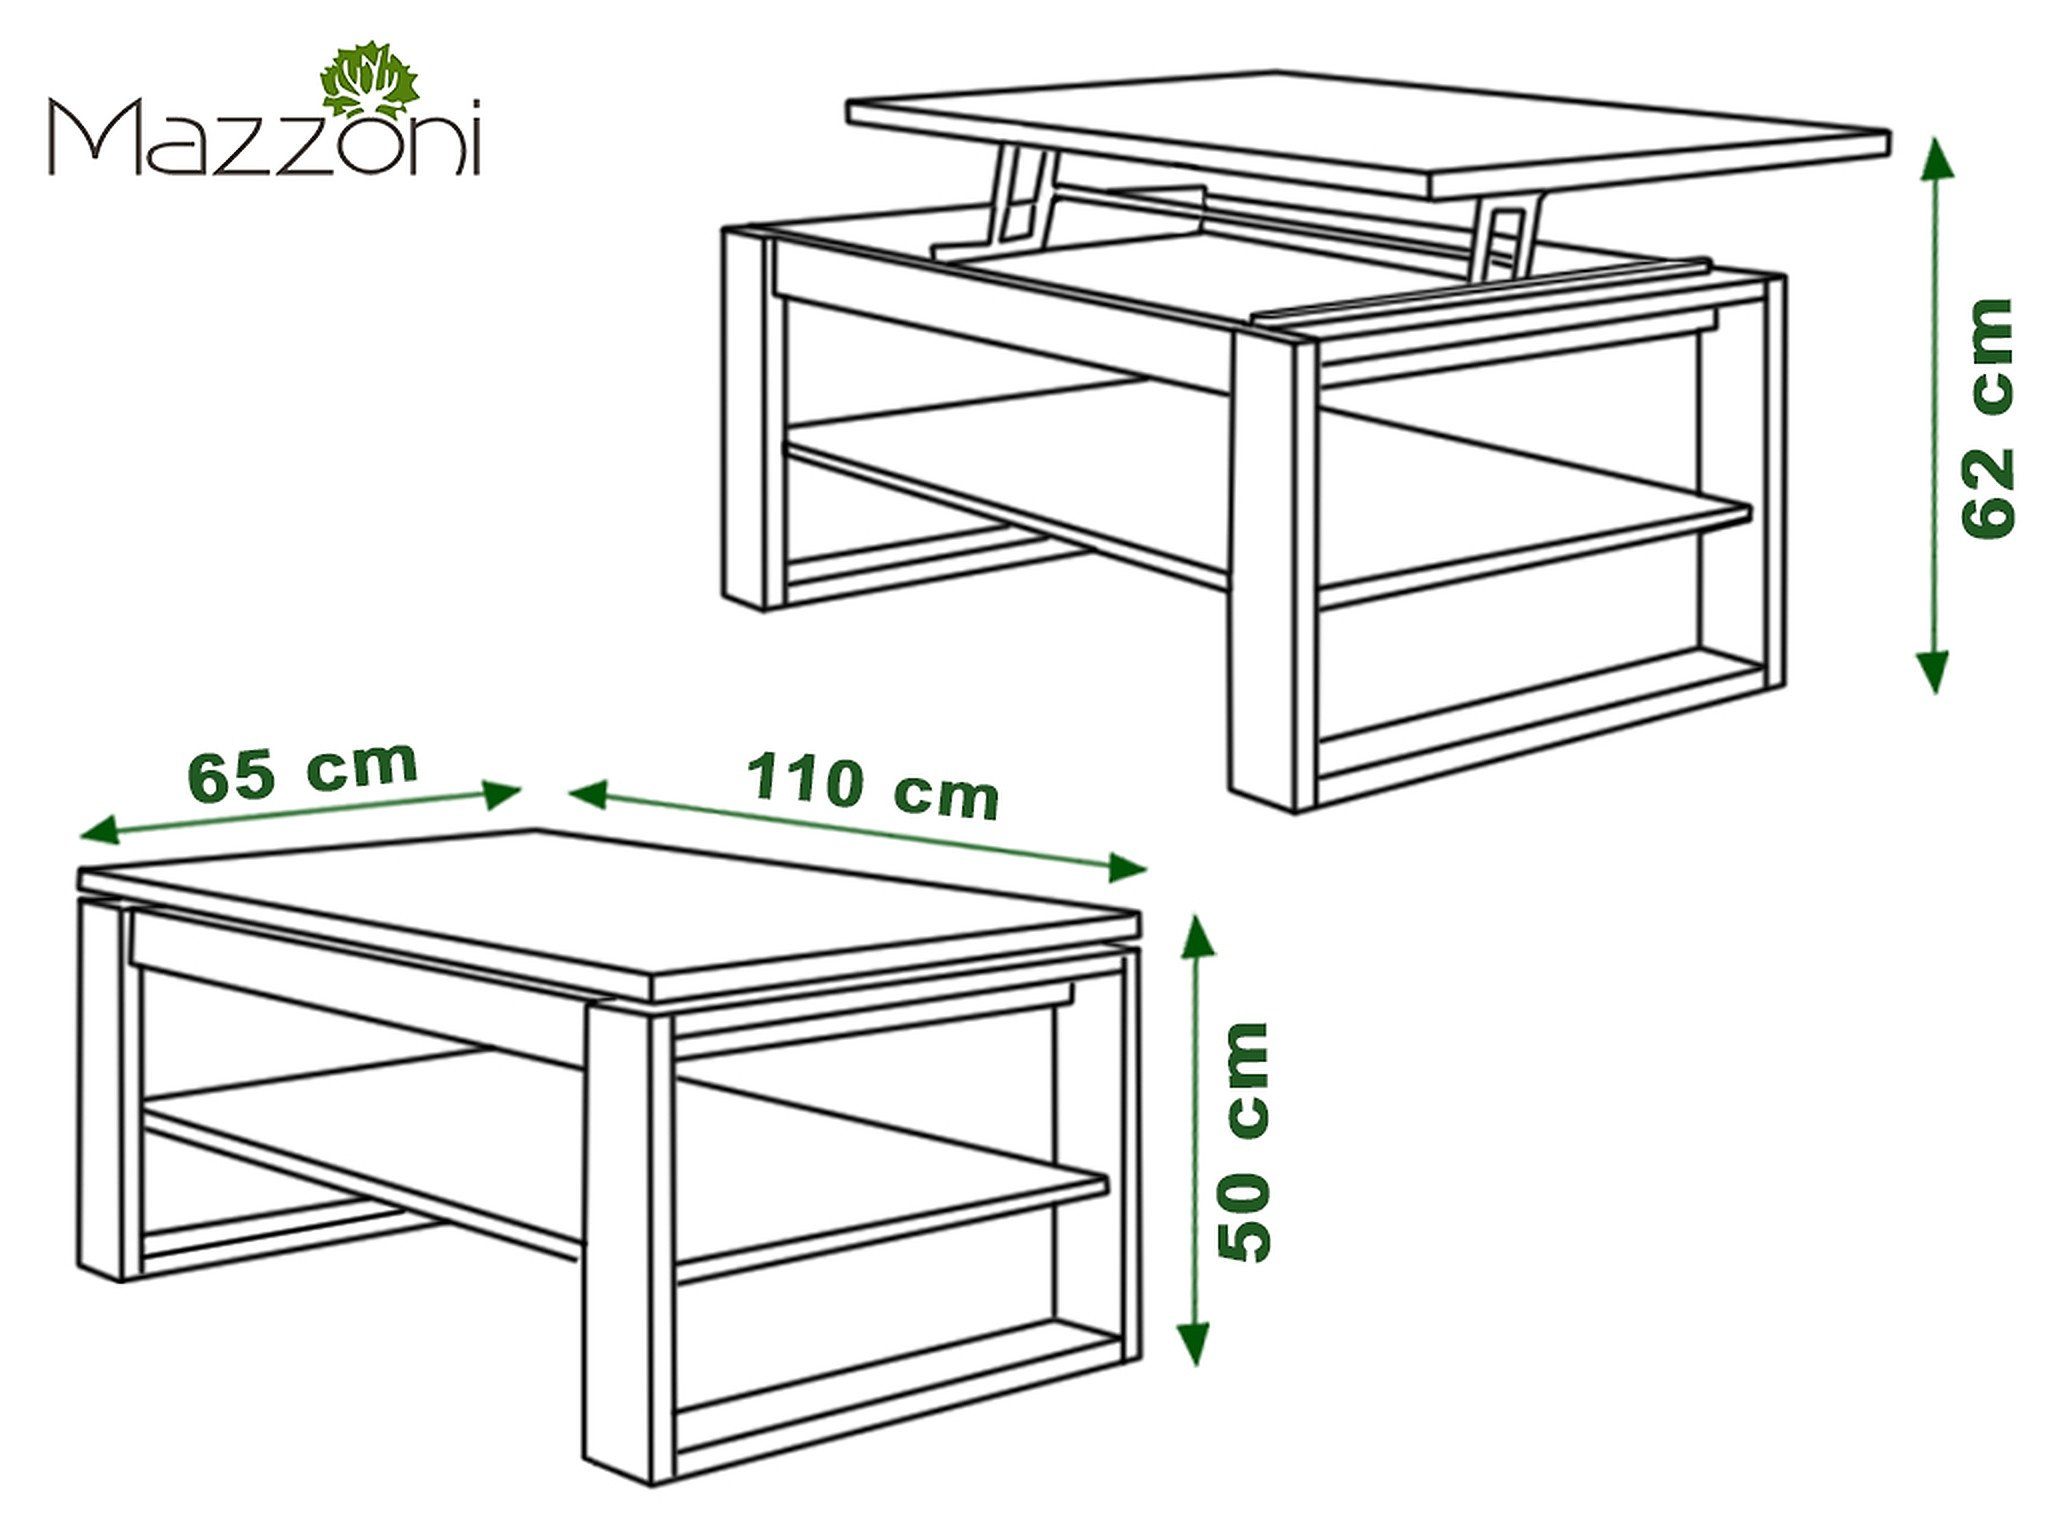 Weiß / Couchtisch Multifunktion Couchtisch Ablage Tisch designimpex dunkel matt Design Esstisch Eiche Arbeitstisch Nuo